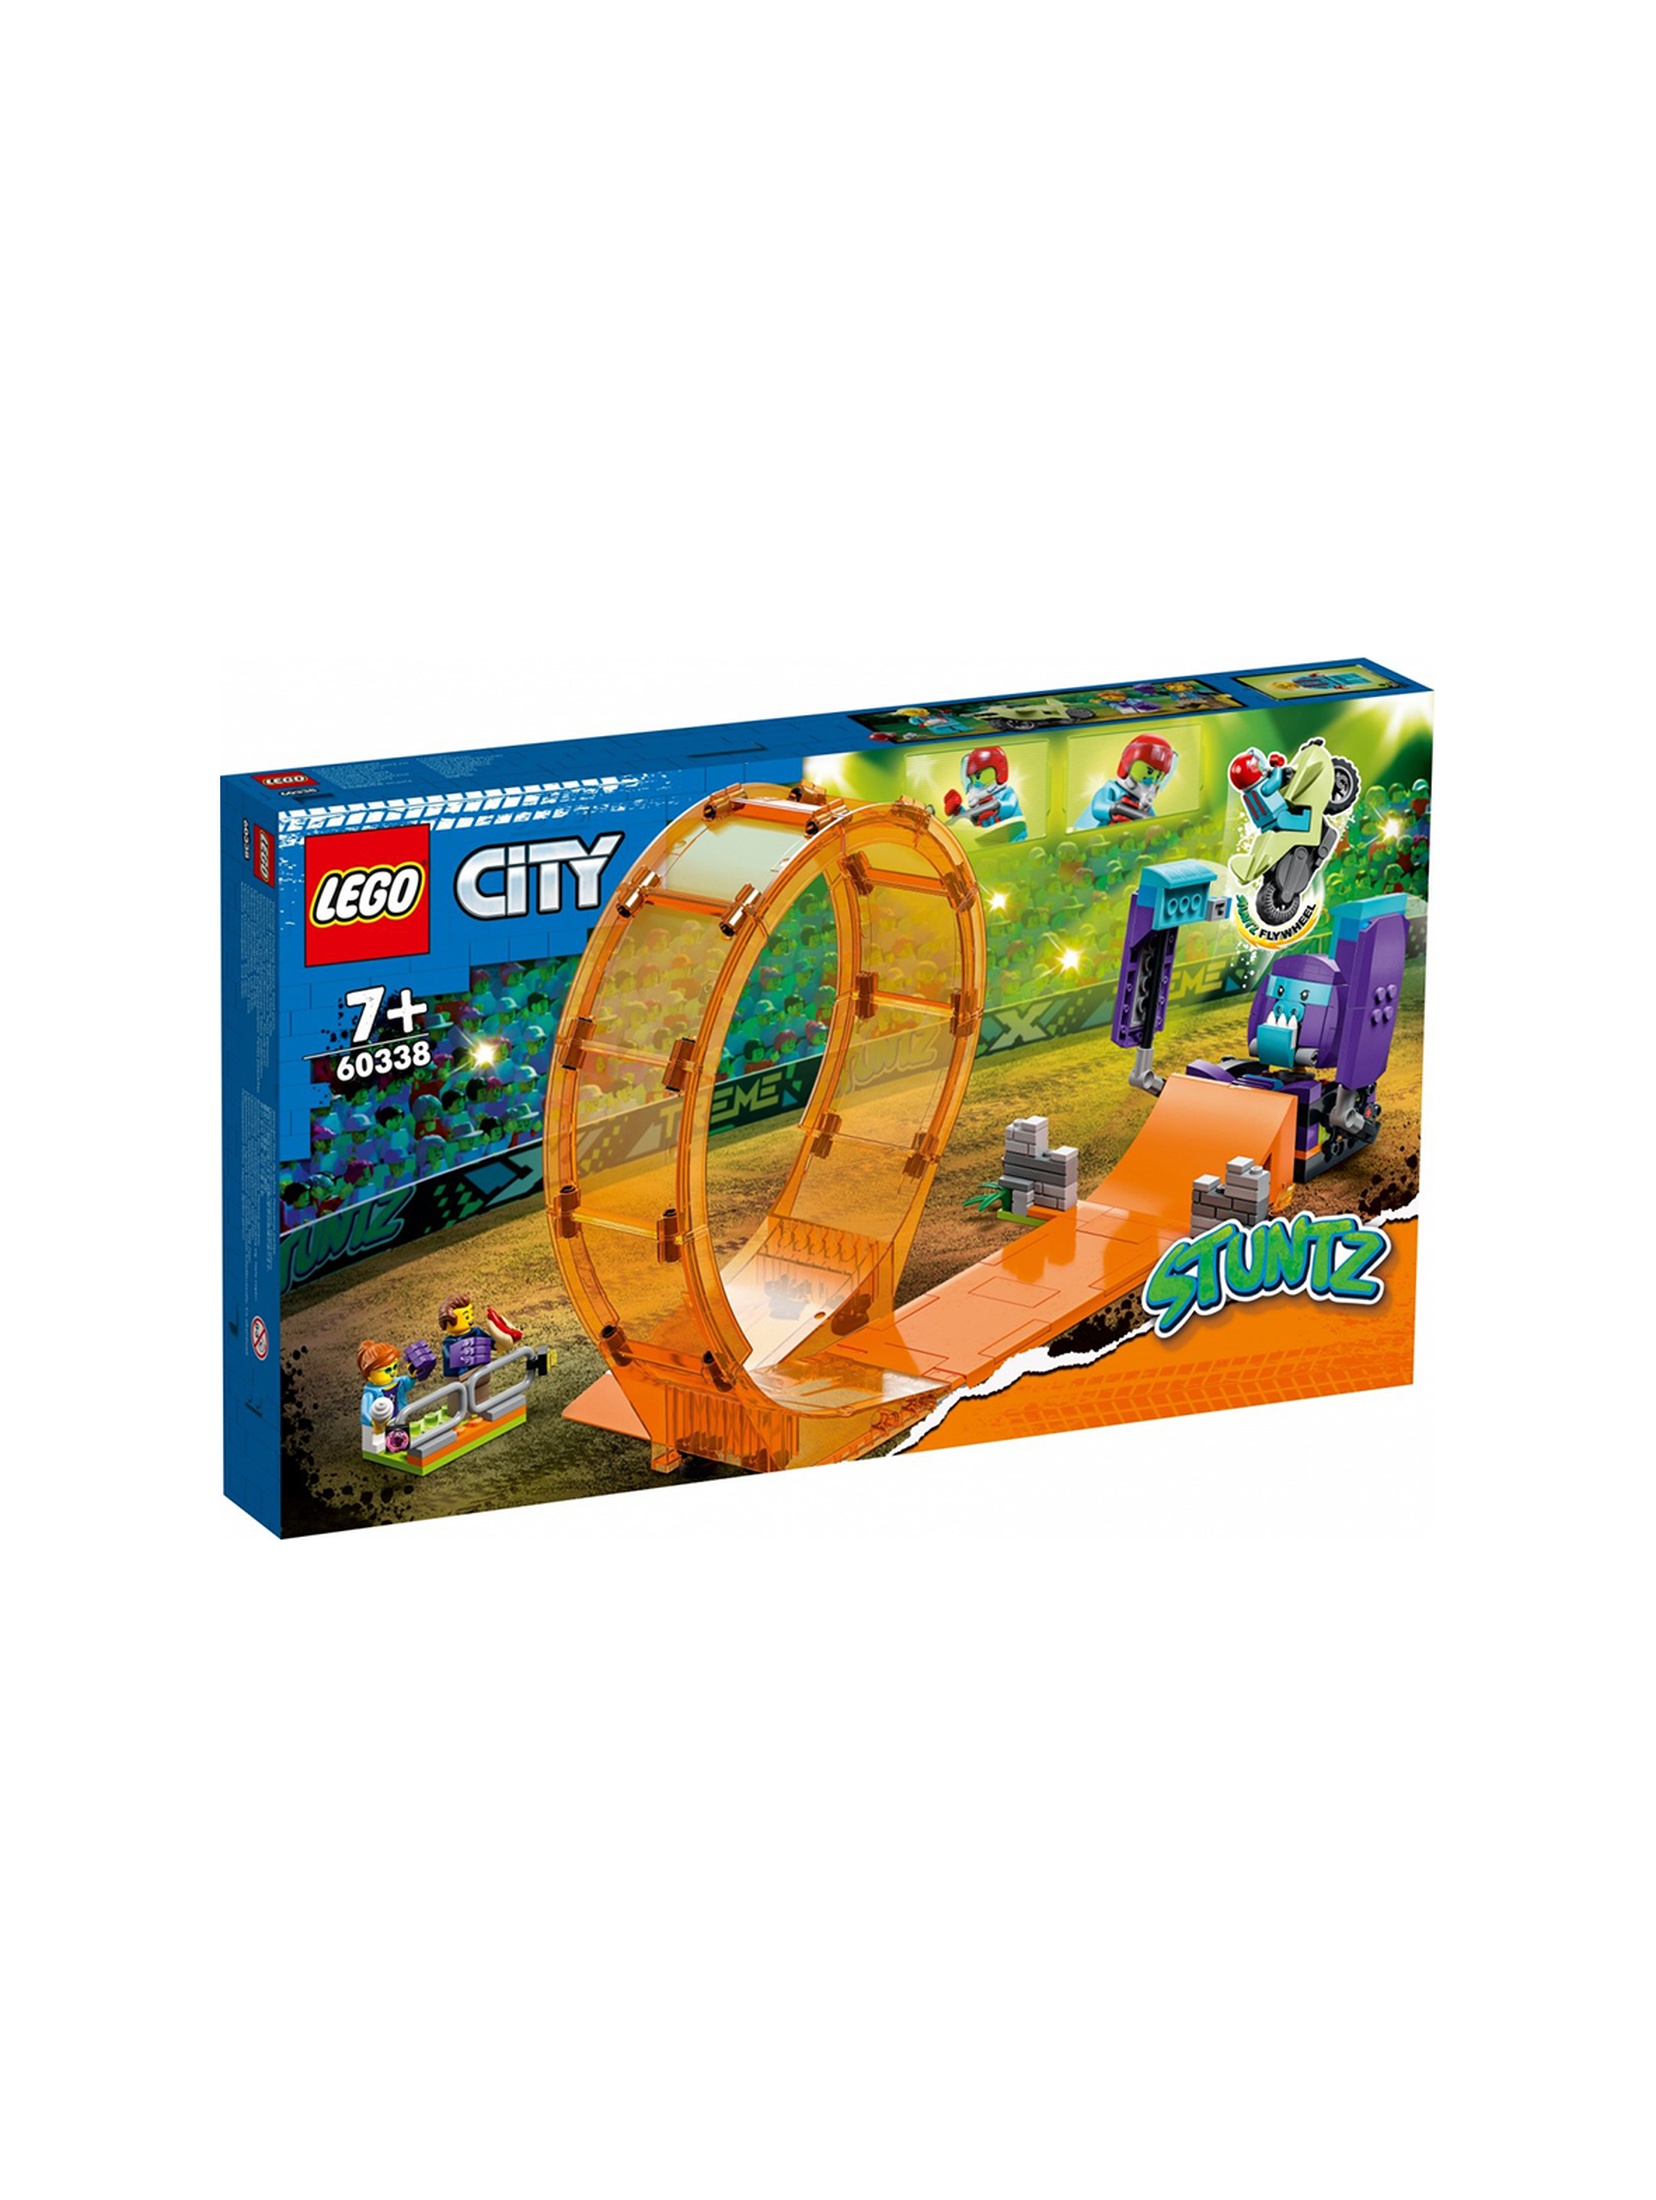 LEGO City - Kaskaderska pętla i szympans demolka 60338 - 226 elementów, wiek 7+